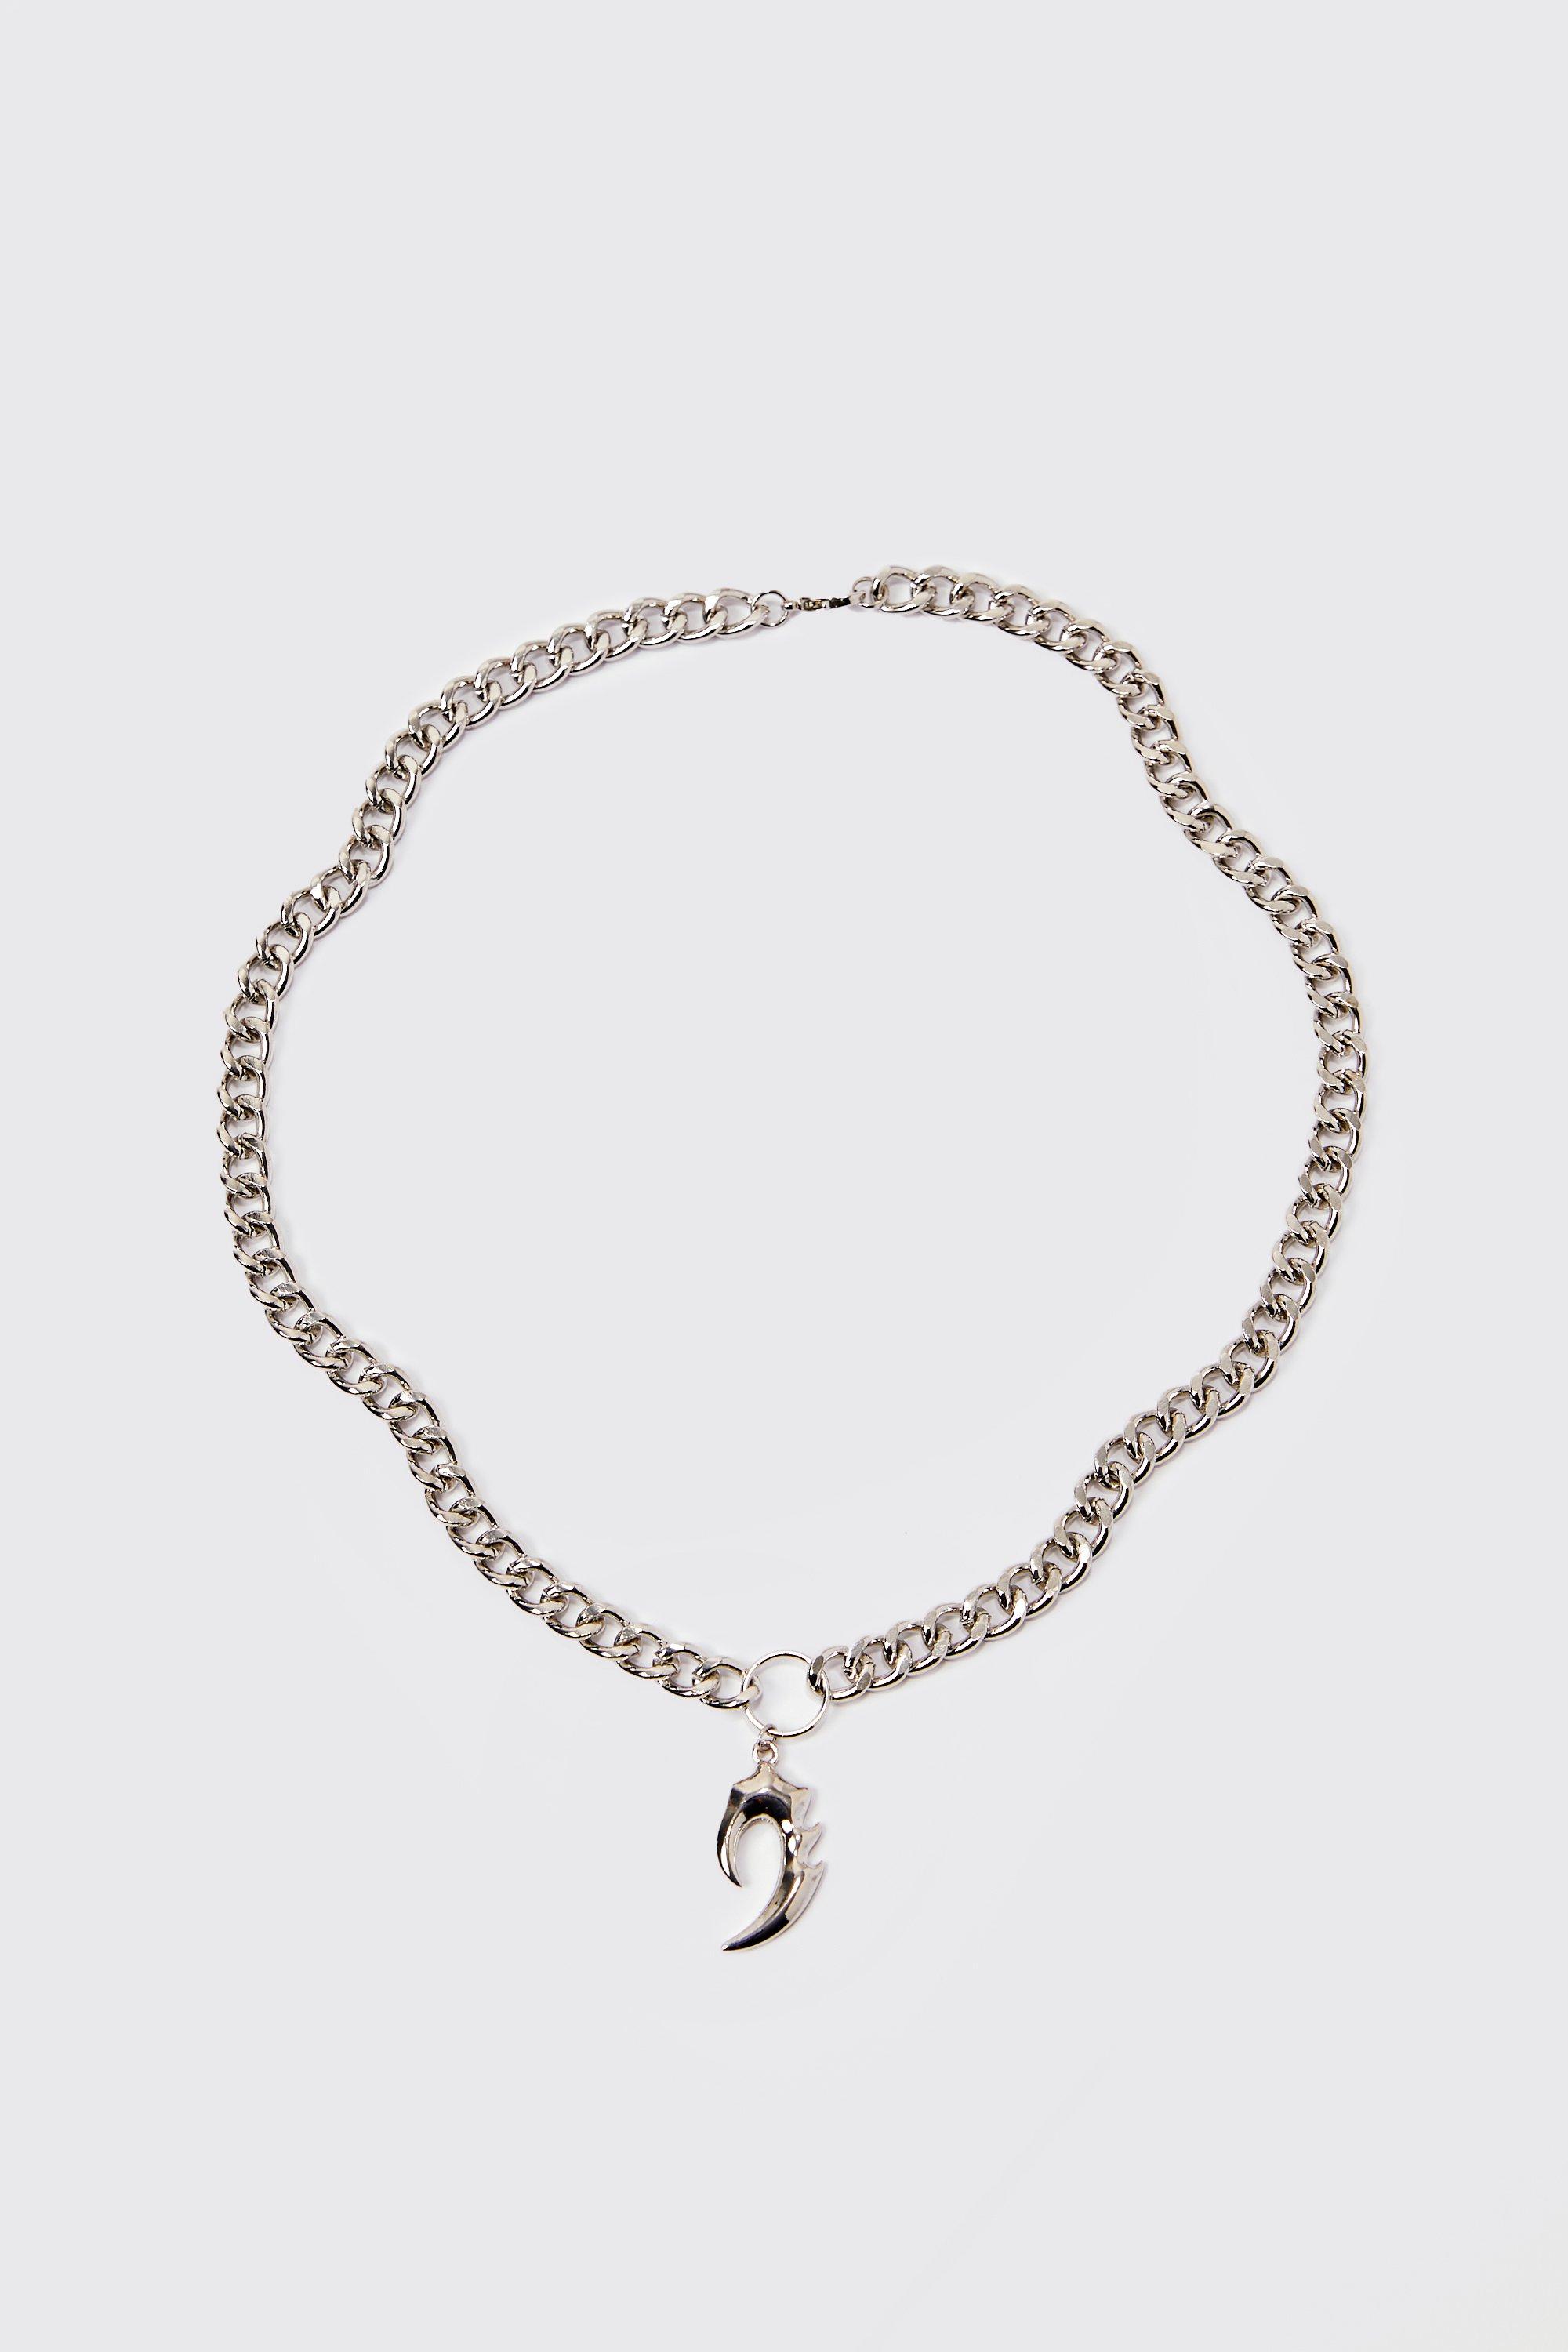 collier en chaîne à pendentif homme - argent - one size, argent